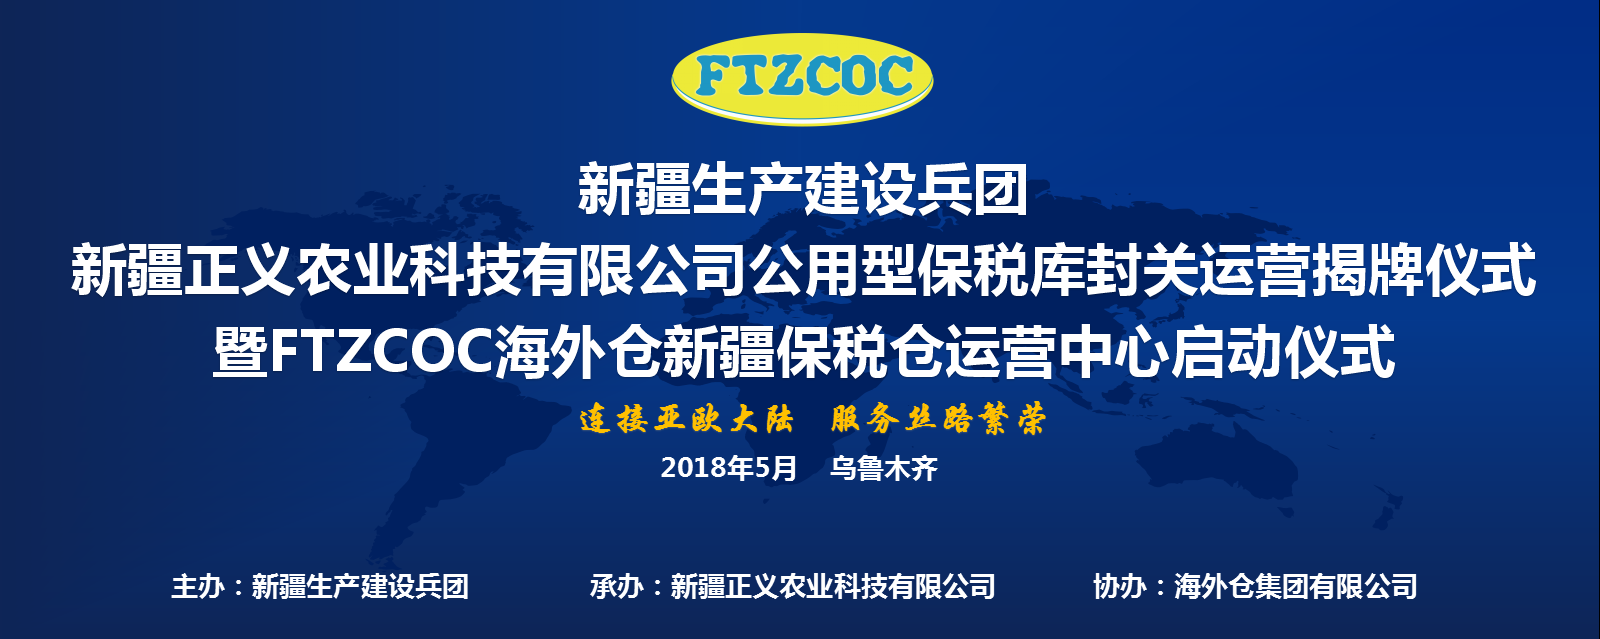 打造FTZCOC新疆保税仓 服务“一带一路”中国-中亚进出口贸易通道